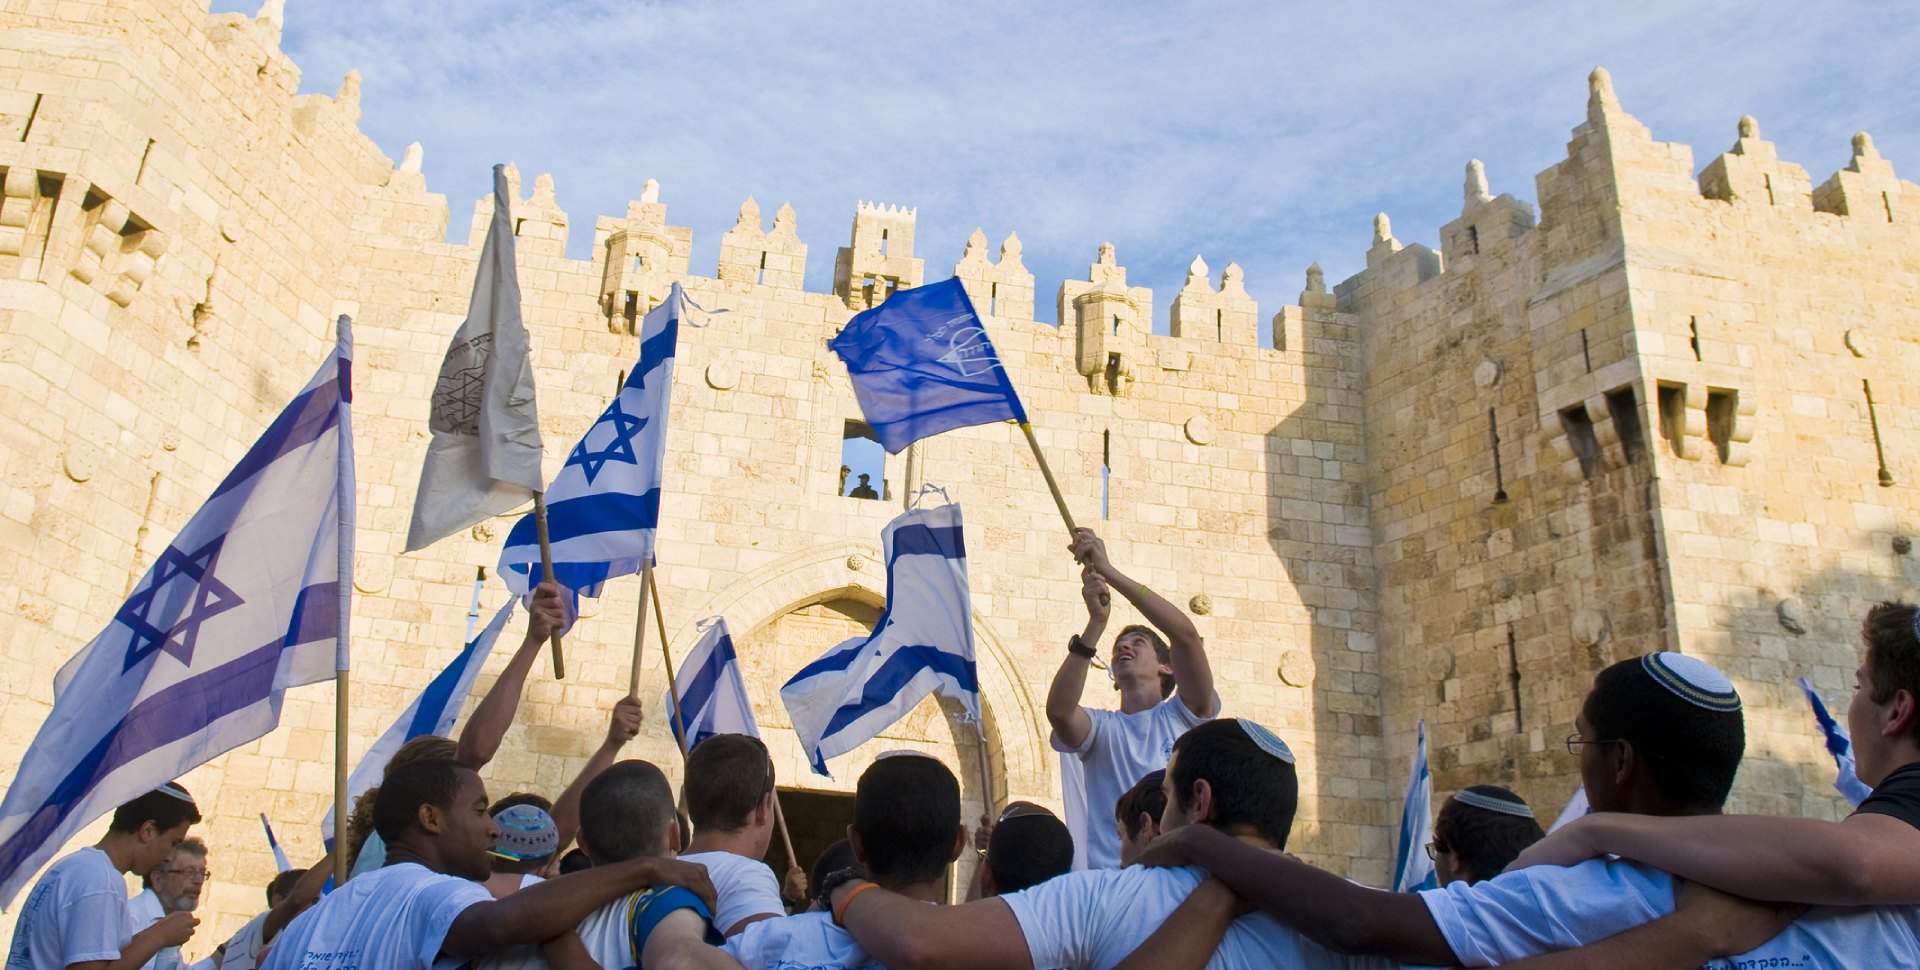 צילום של אירועי יום העצמאות בירושלים: חוגגים יחד